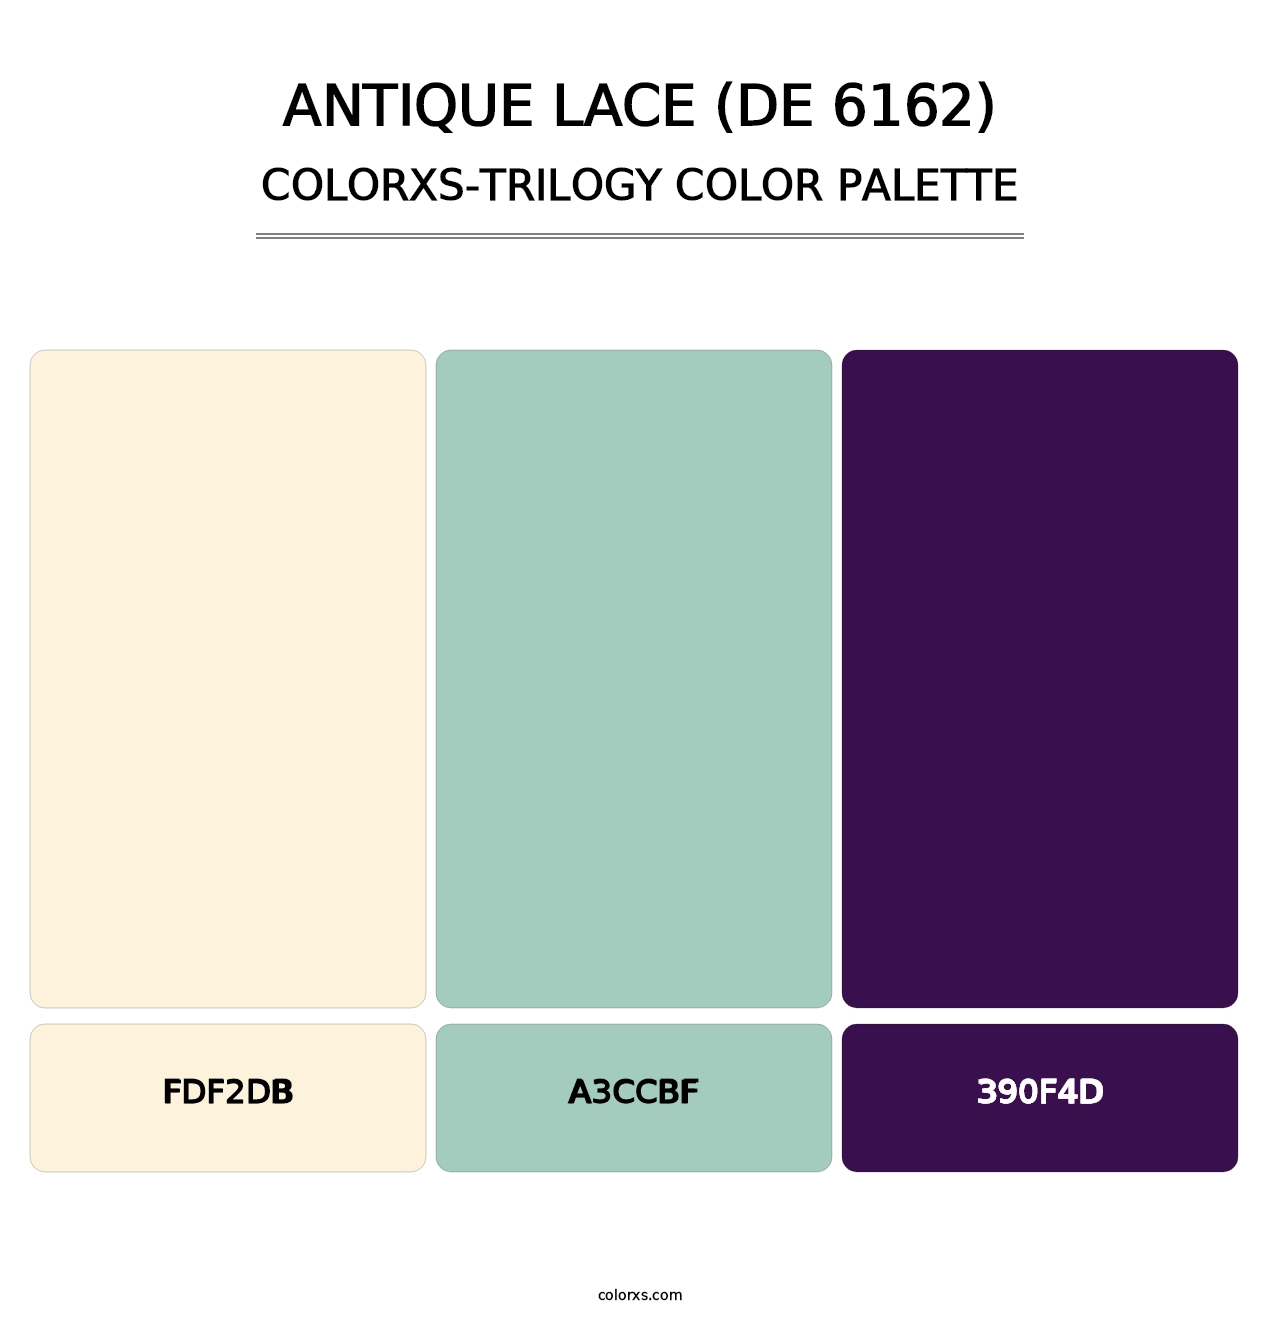 Antique Lace (DE 6162) - Colorxs Trilogy Palette